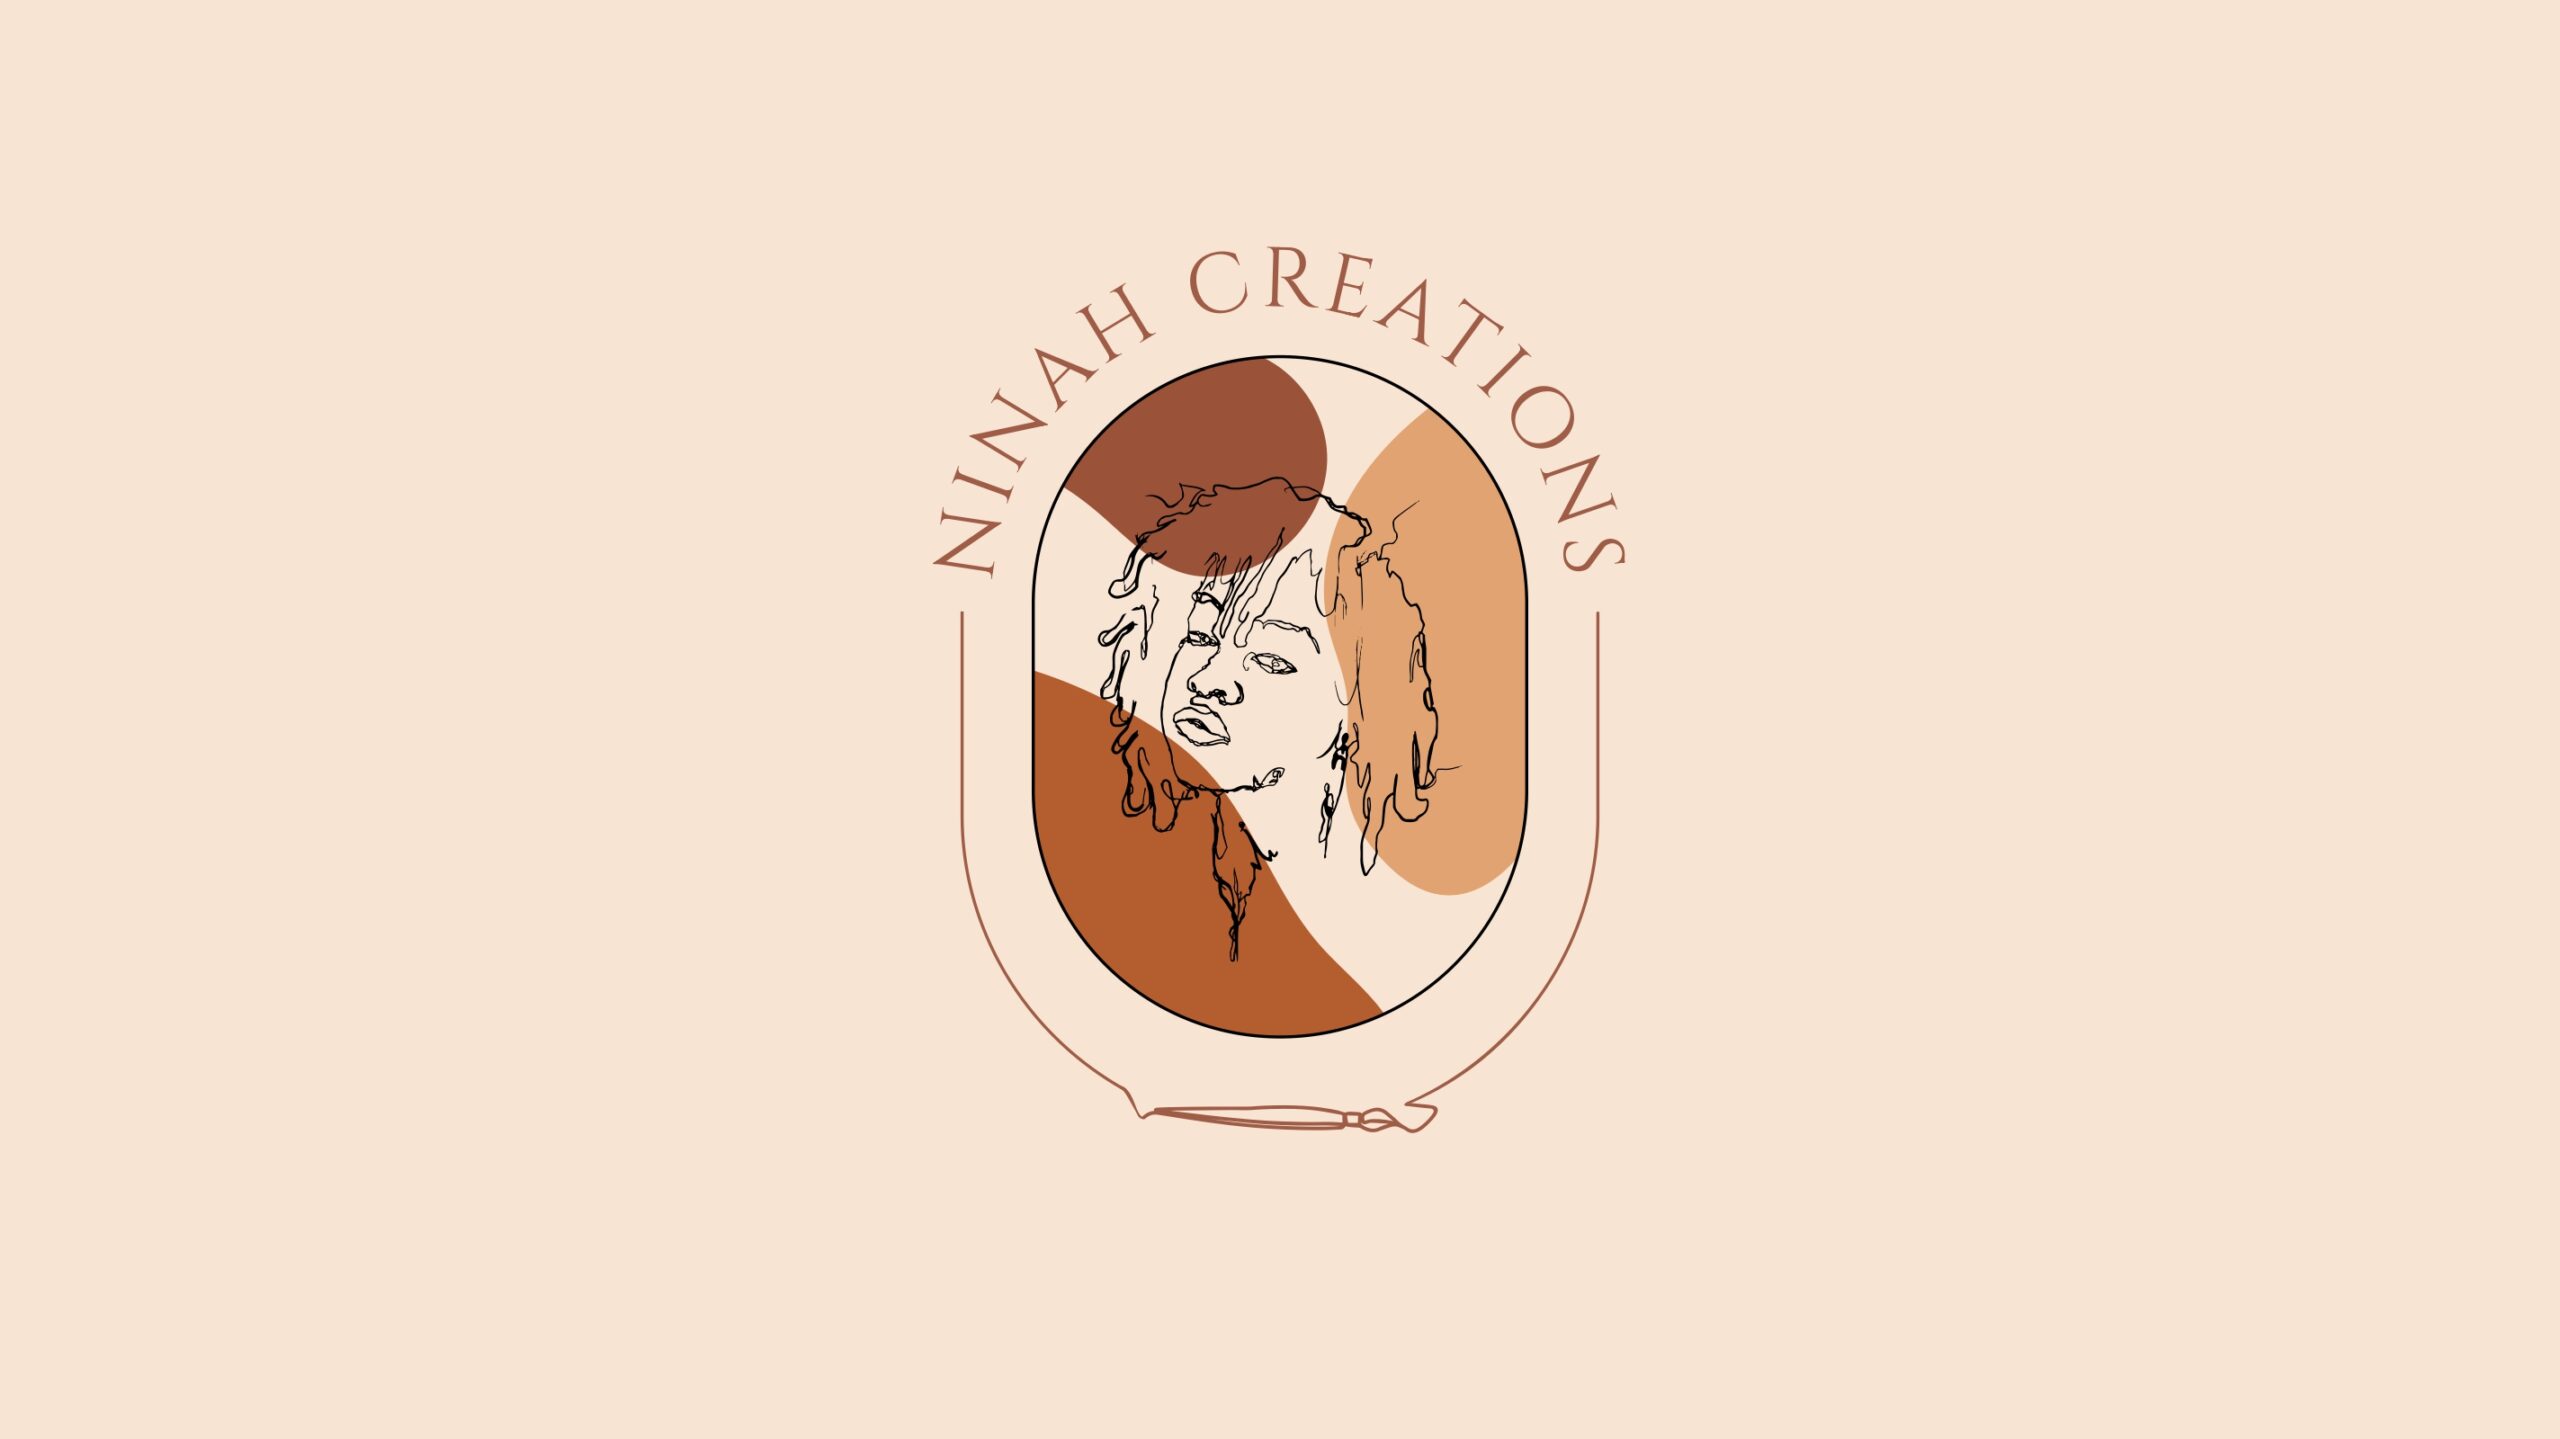 NINAH CREATIONS